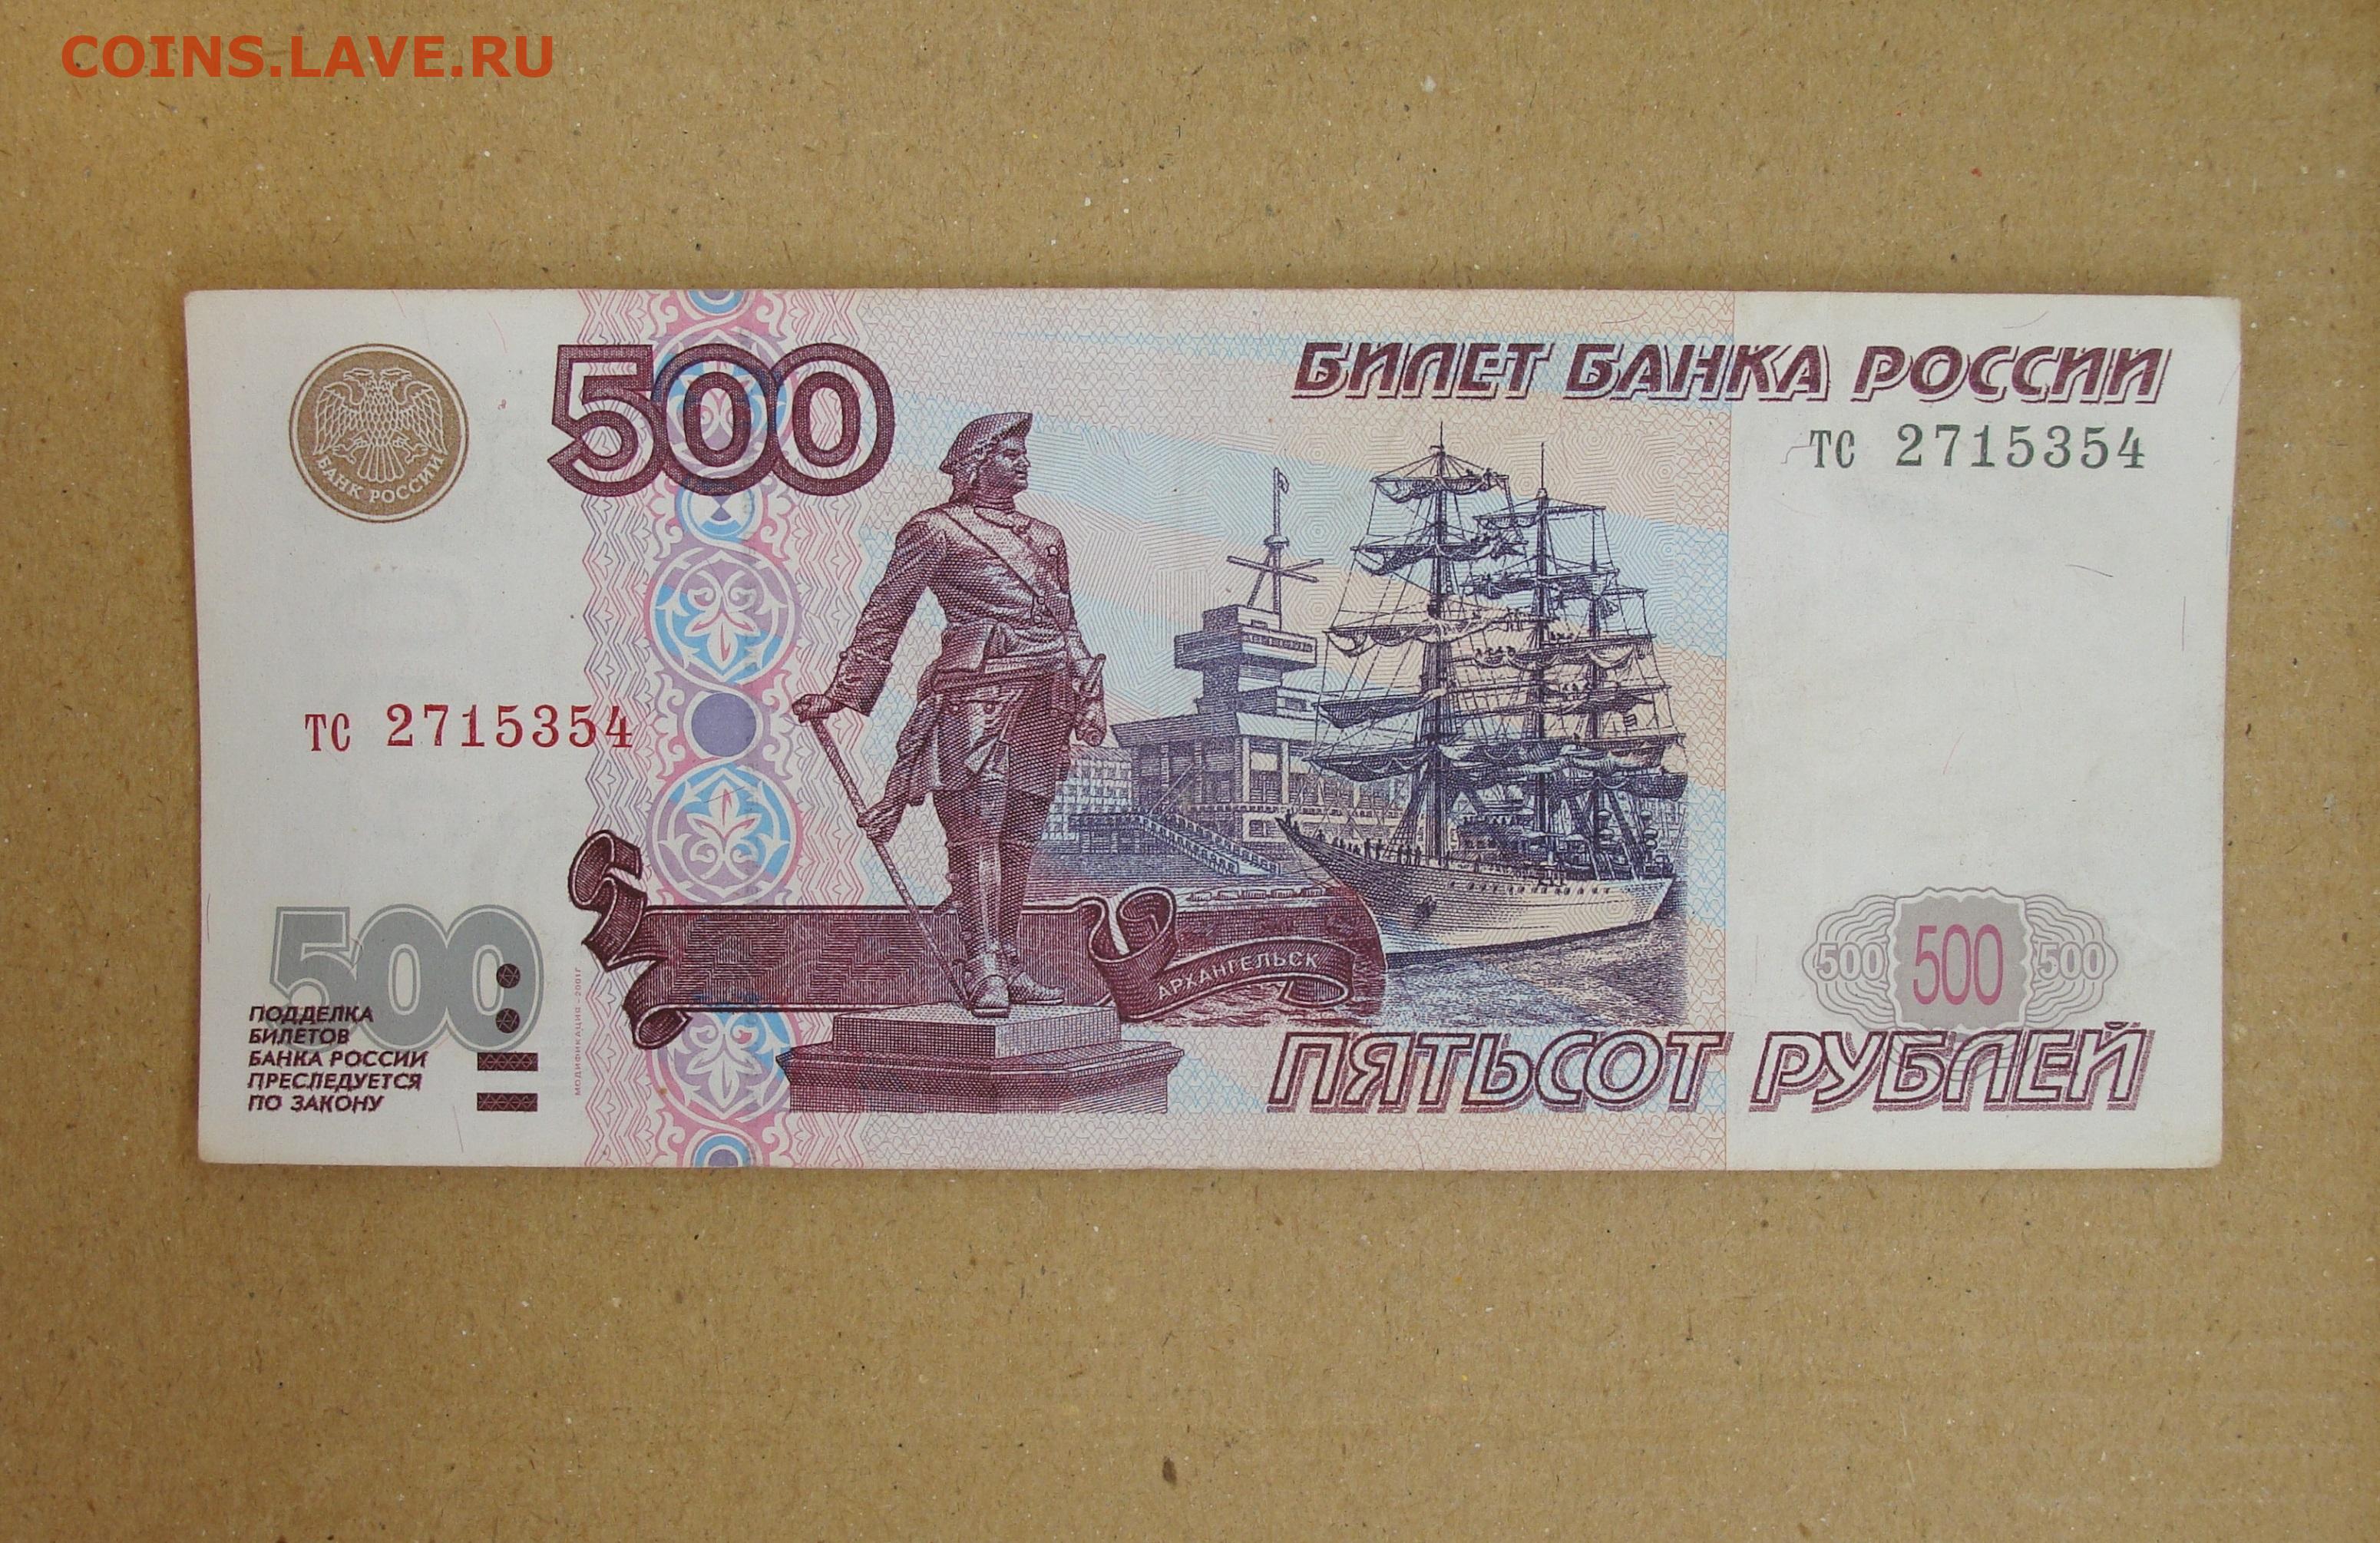 Размер 500 рублей. 500 Рублей 1997 года модификации 2004 года. 1000 Рублей 1997 (модификация 2004 года) UNC. 500 Рублей 2004 года модификации. Купюра 500 рублей.